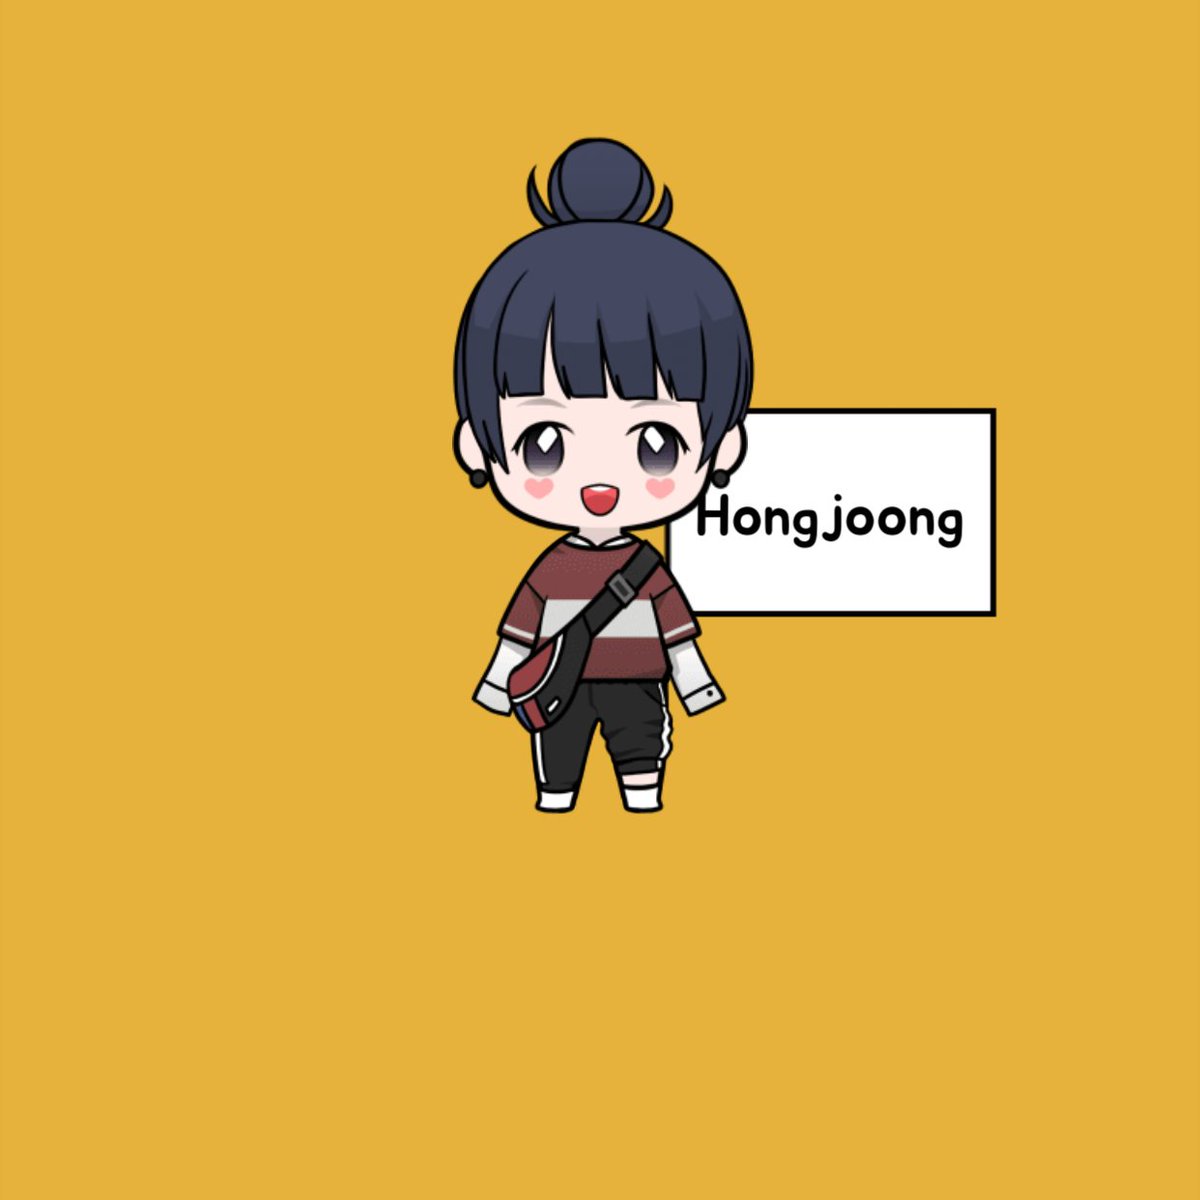 Hongjoong